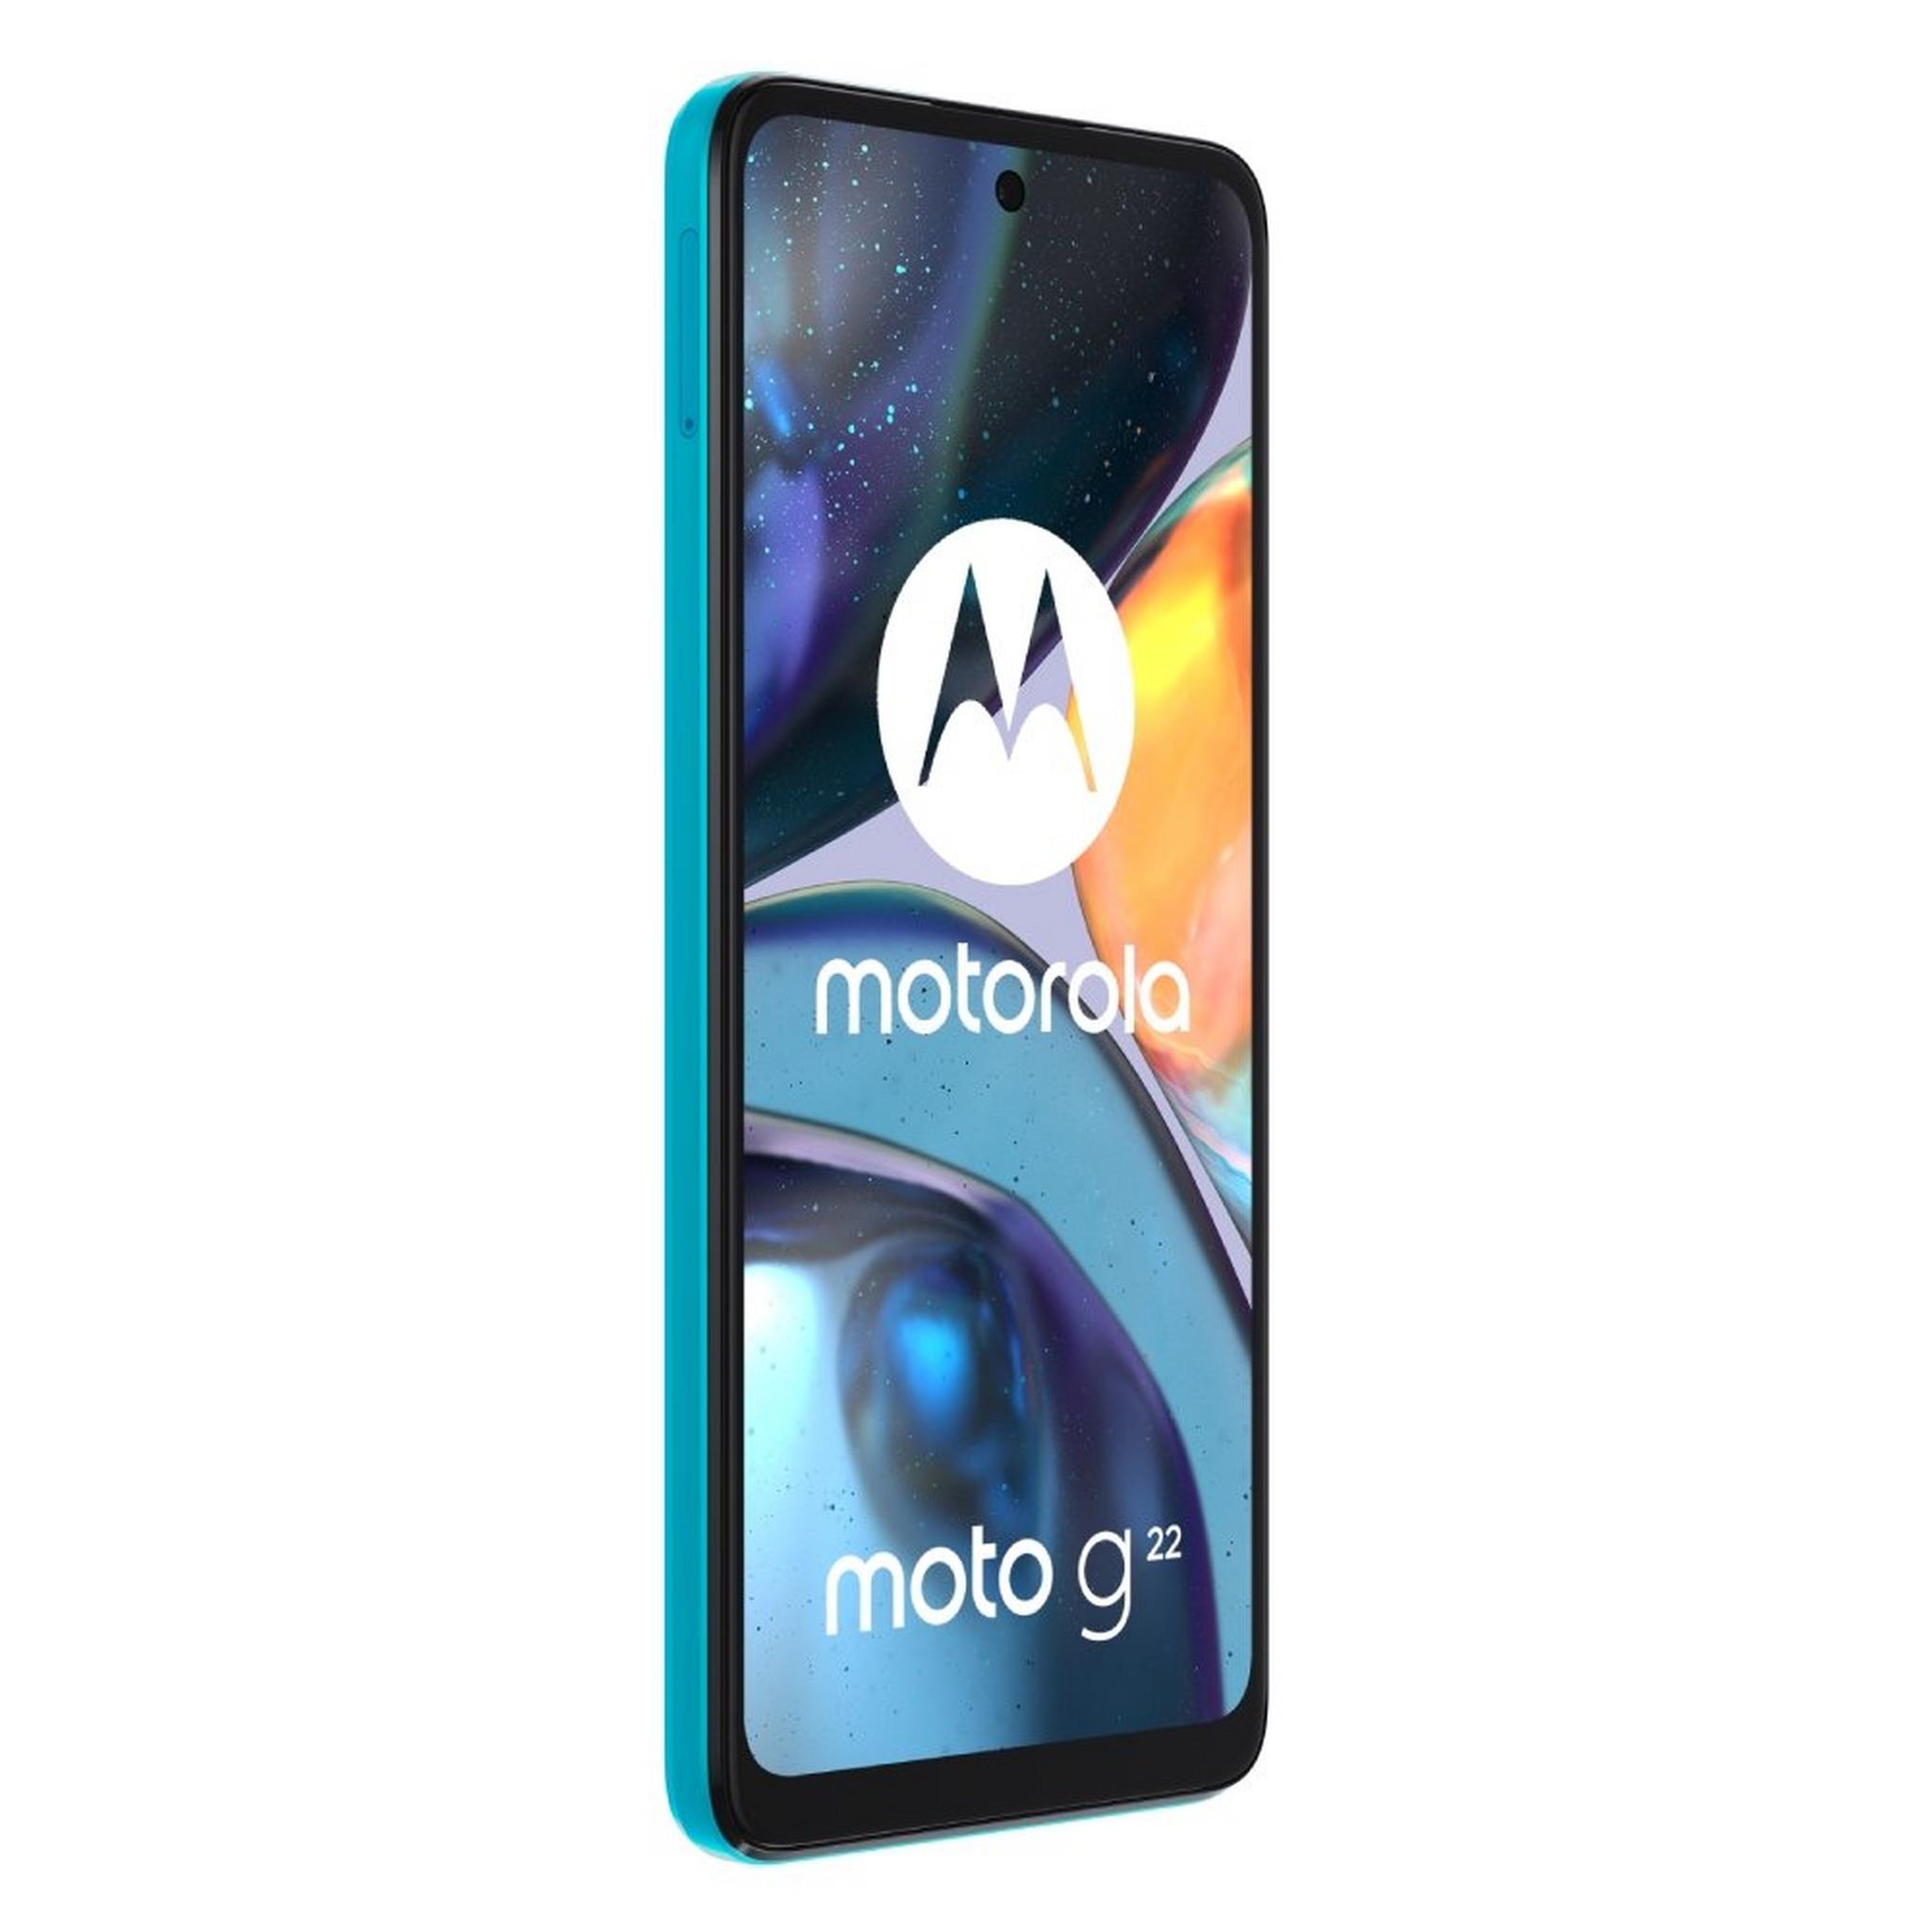 هاتف موتورولا موتو جي ٢٢ بسعة ١٢٨ جيجابايت - أزرق